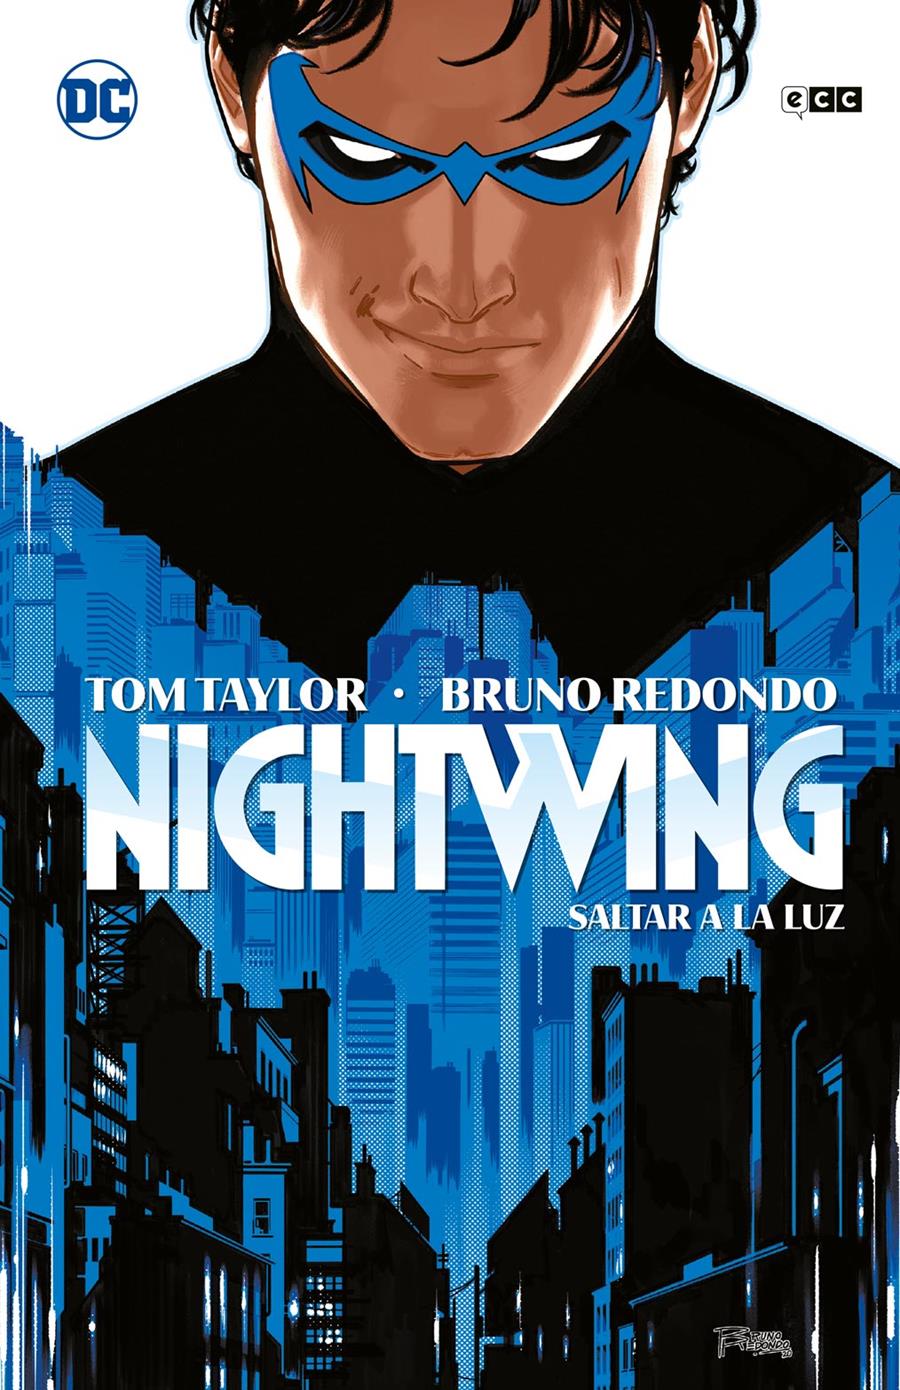 Nightwing vol. 01: Saltar a la luz | N0923-ECC40 | Tom Taylor y Bruno Redondo, Rick Leonardi y Neil Edwards. | Terra de Còmic - Tu tienda de cómics online especializada en cómics, manga y merchandising